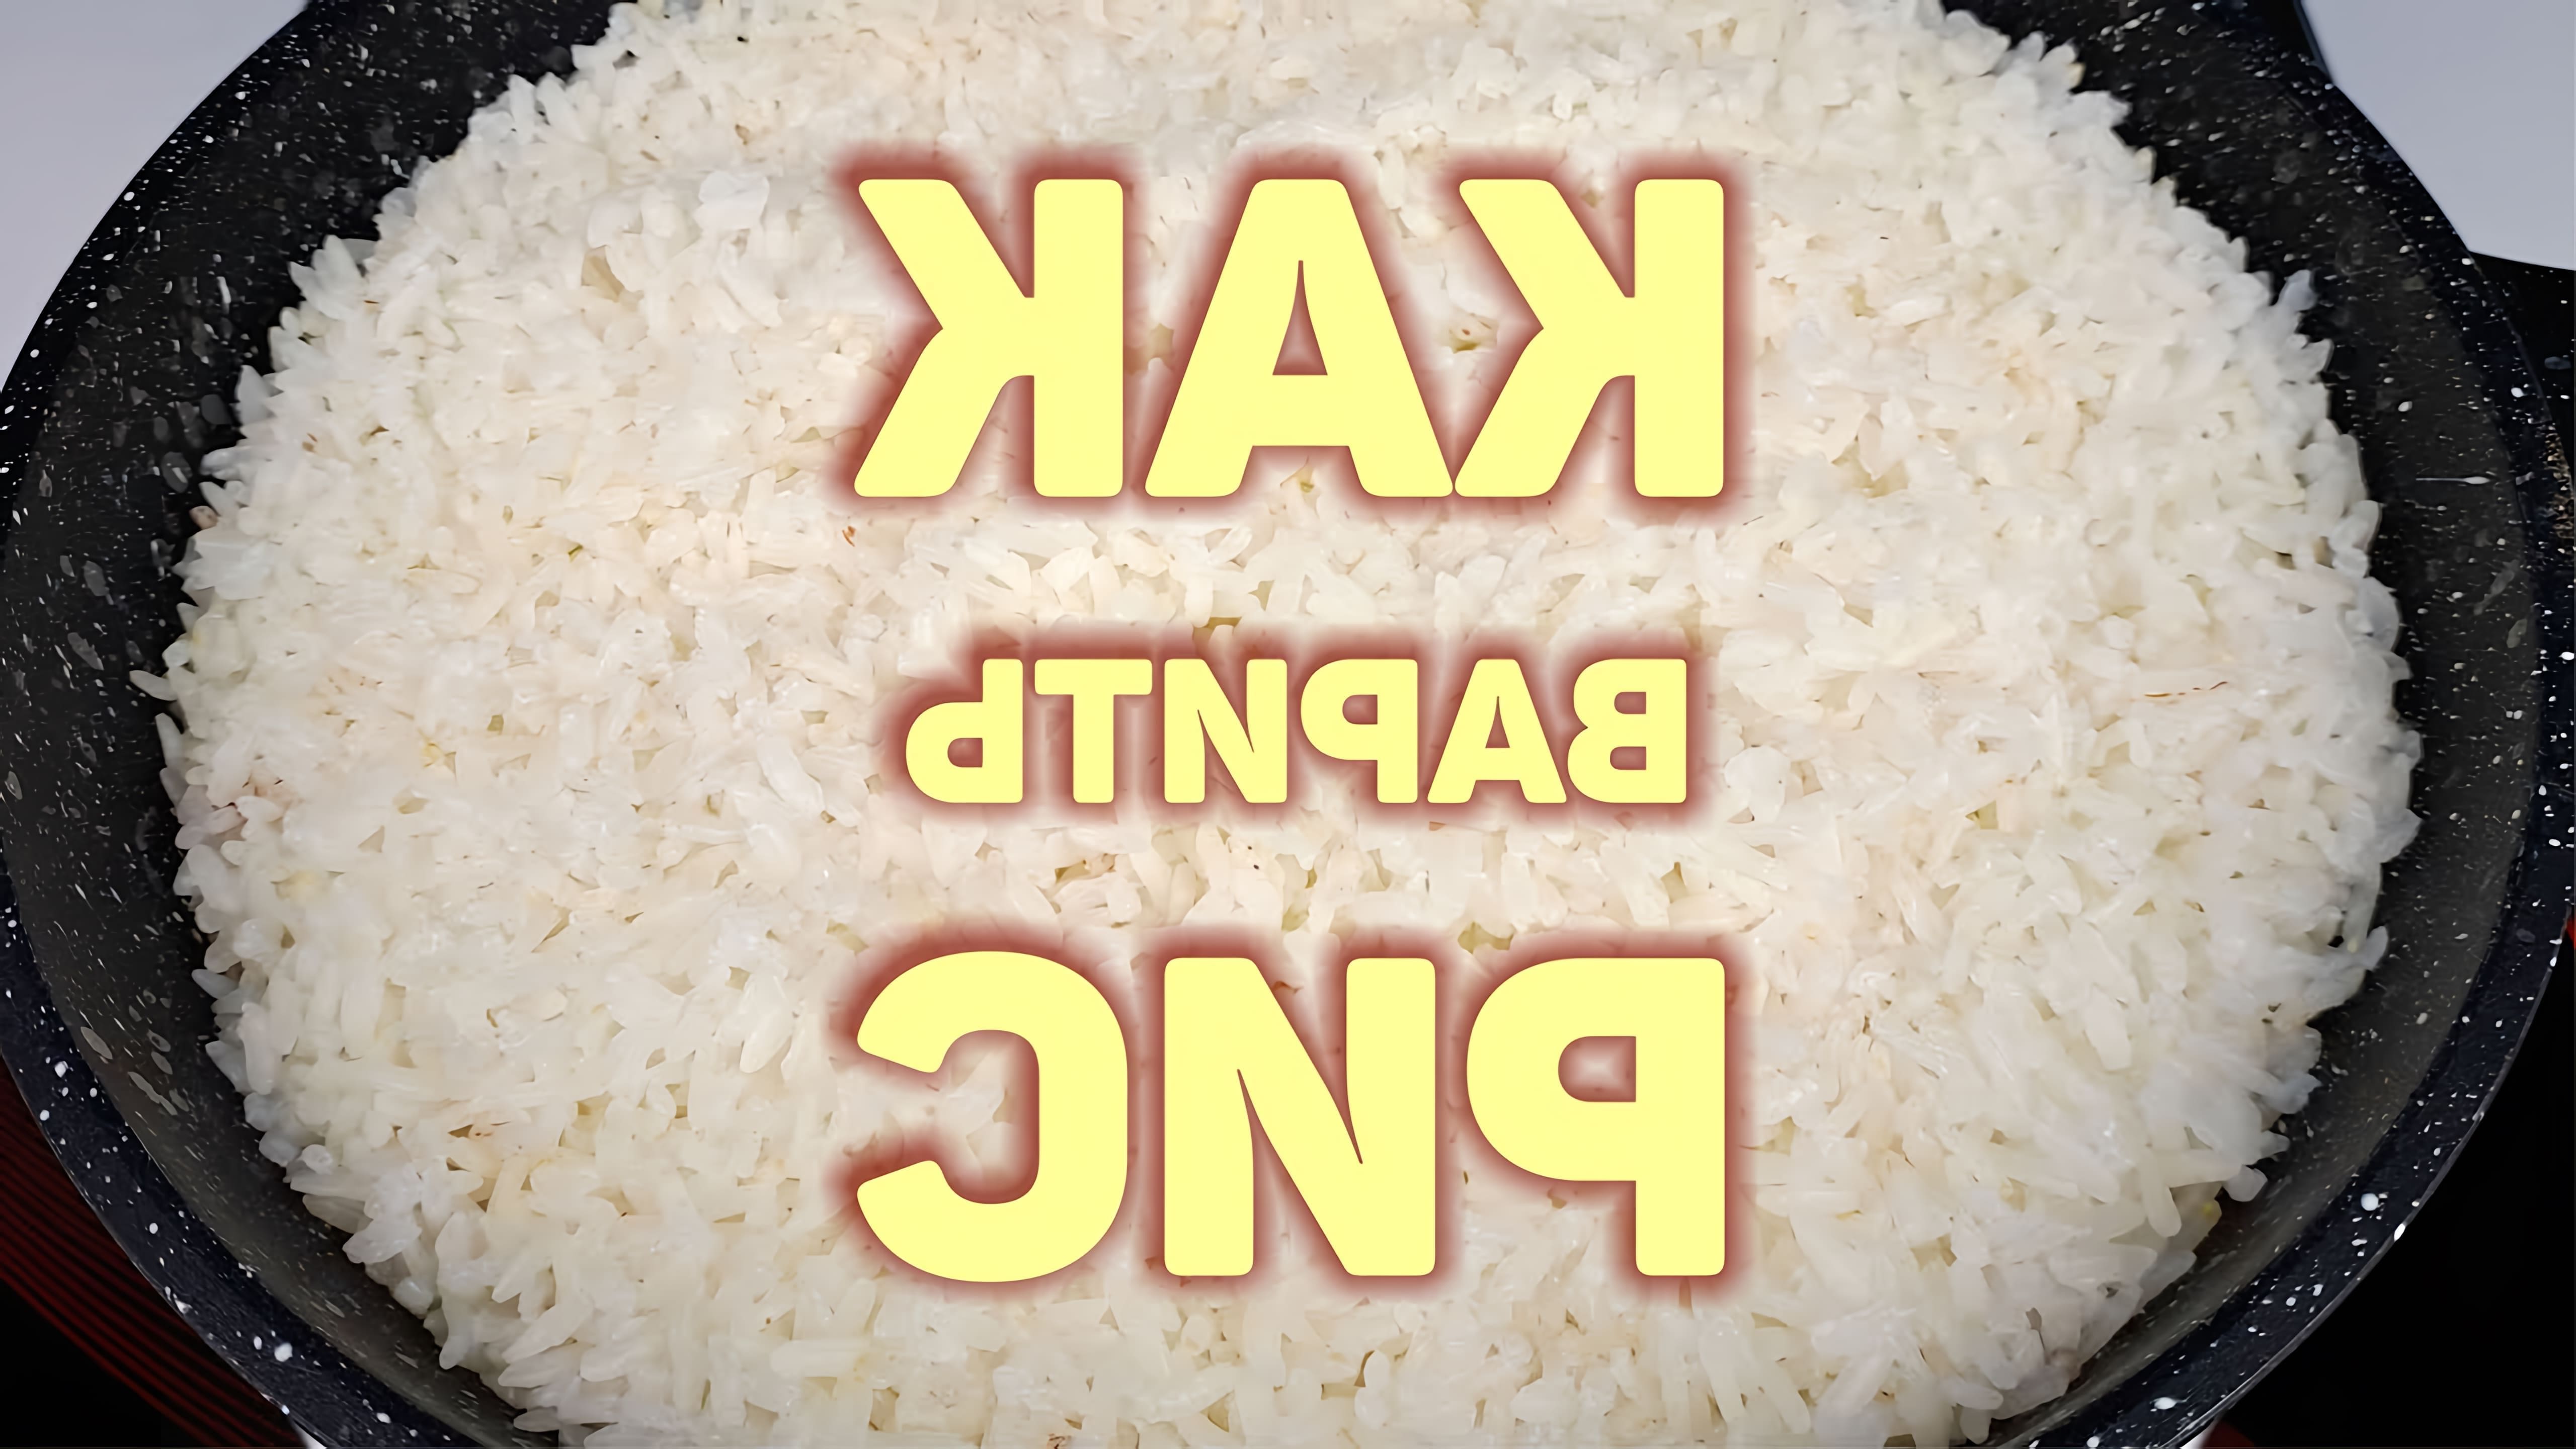 В данном видео демонстрируется процесс приготовления риса по-корейски, который называется фаби или паб